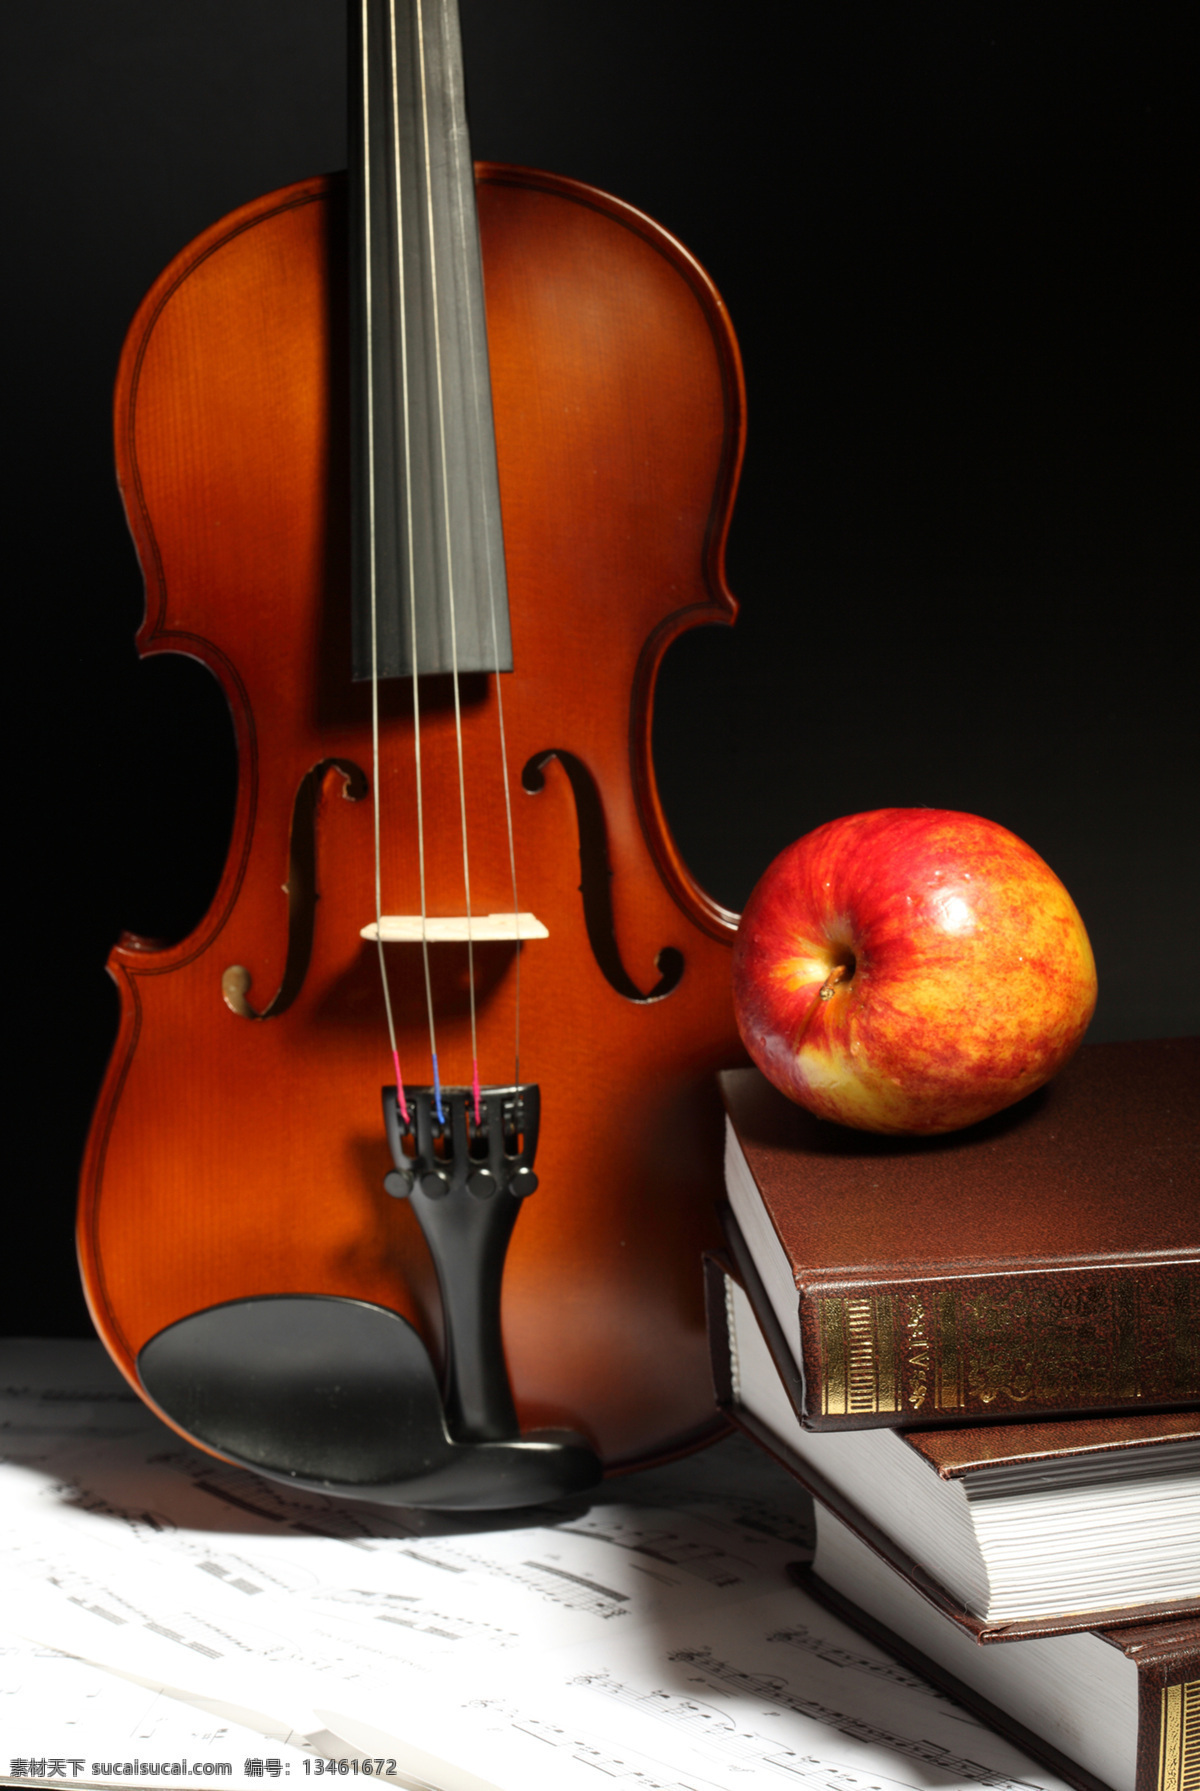 小提琴 乐谱 苹果 书本 书籍 水果 文化艺术 舞蹈音乐 高清小提琴 中提琴